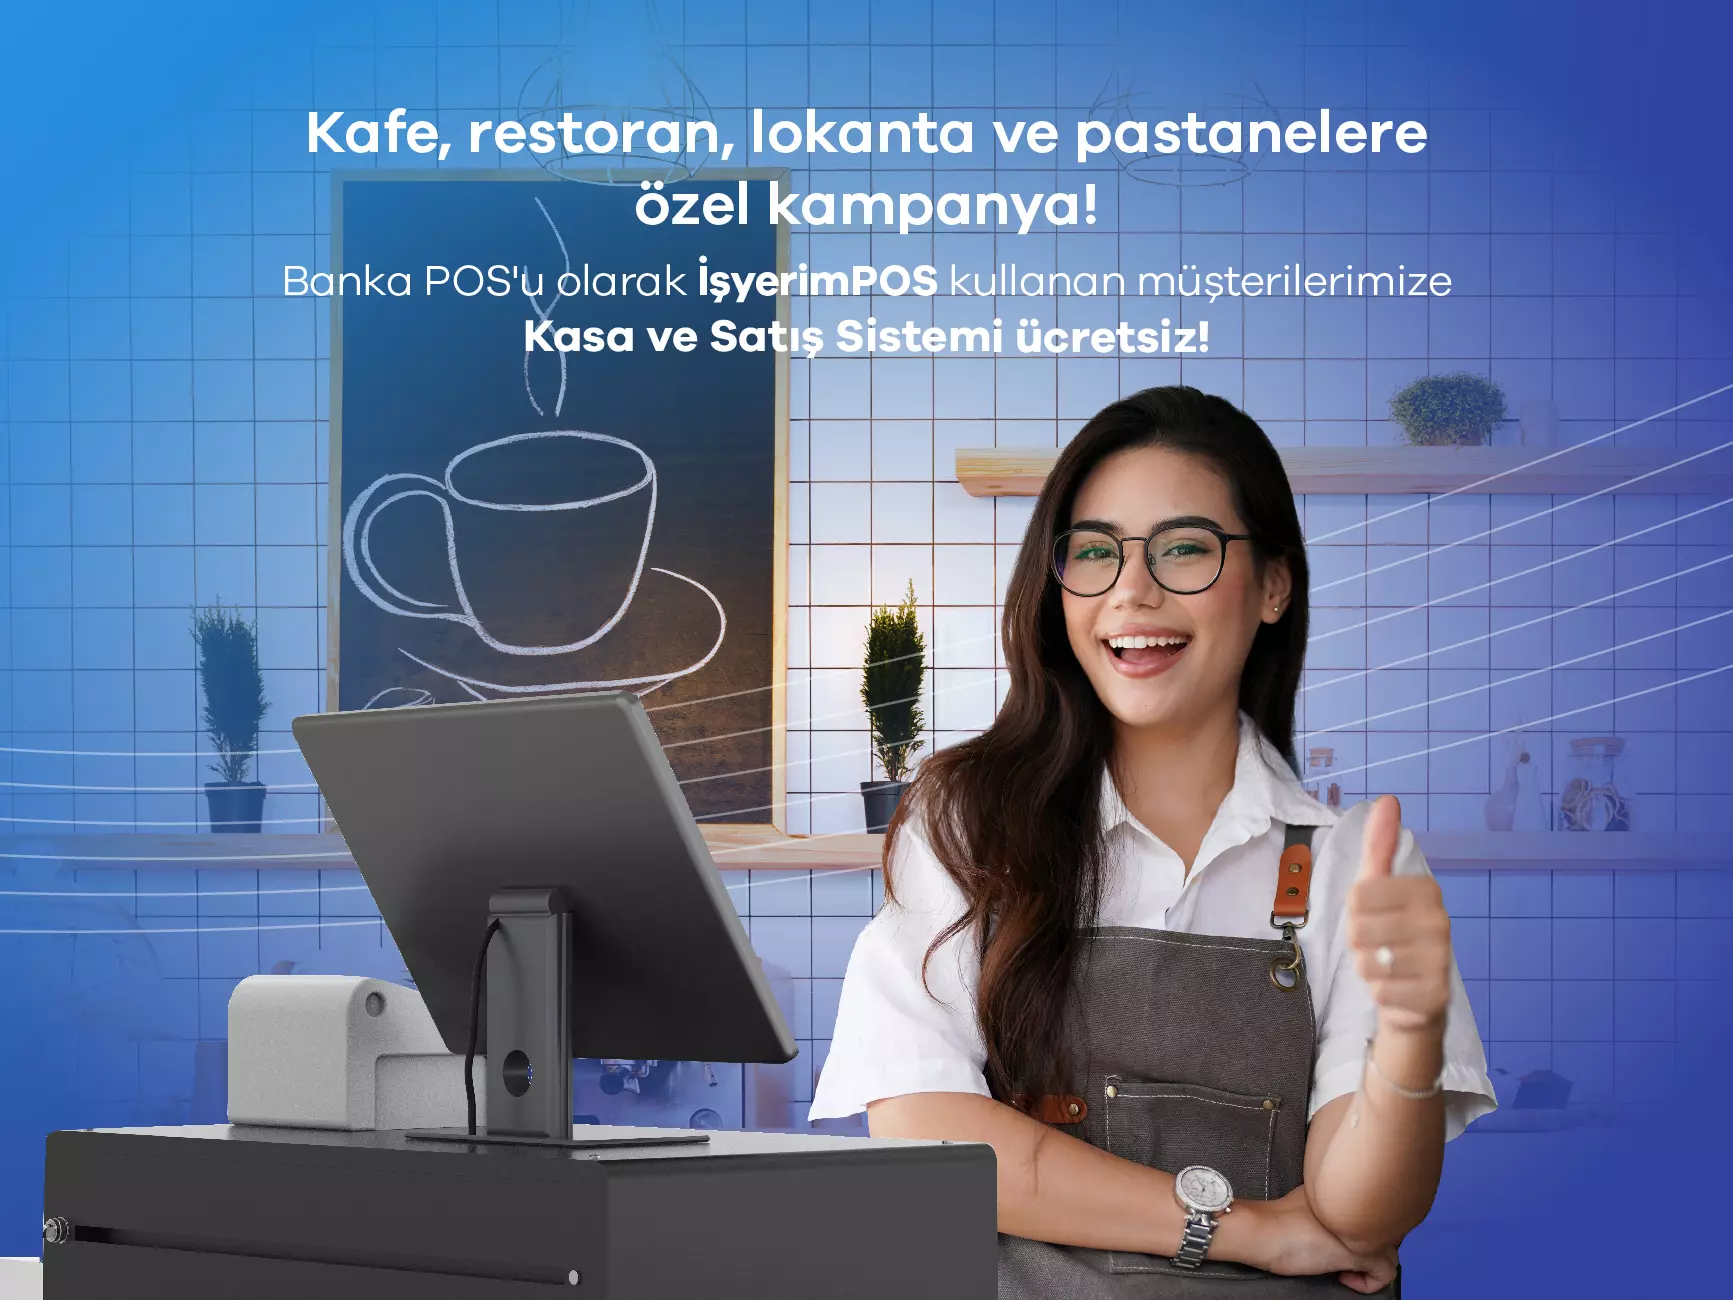 İşyerimPOS ile Kafe, Restoran, Lokanta ve Pastanelere Kasa ve Satış Sistemi Ücretsiz!